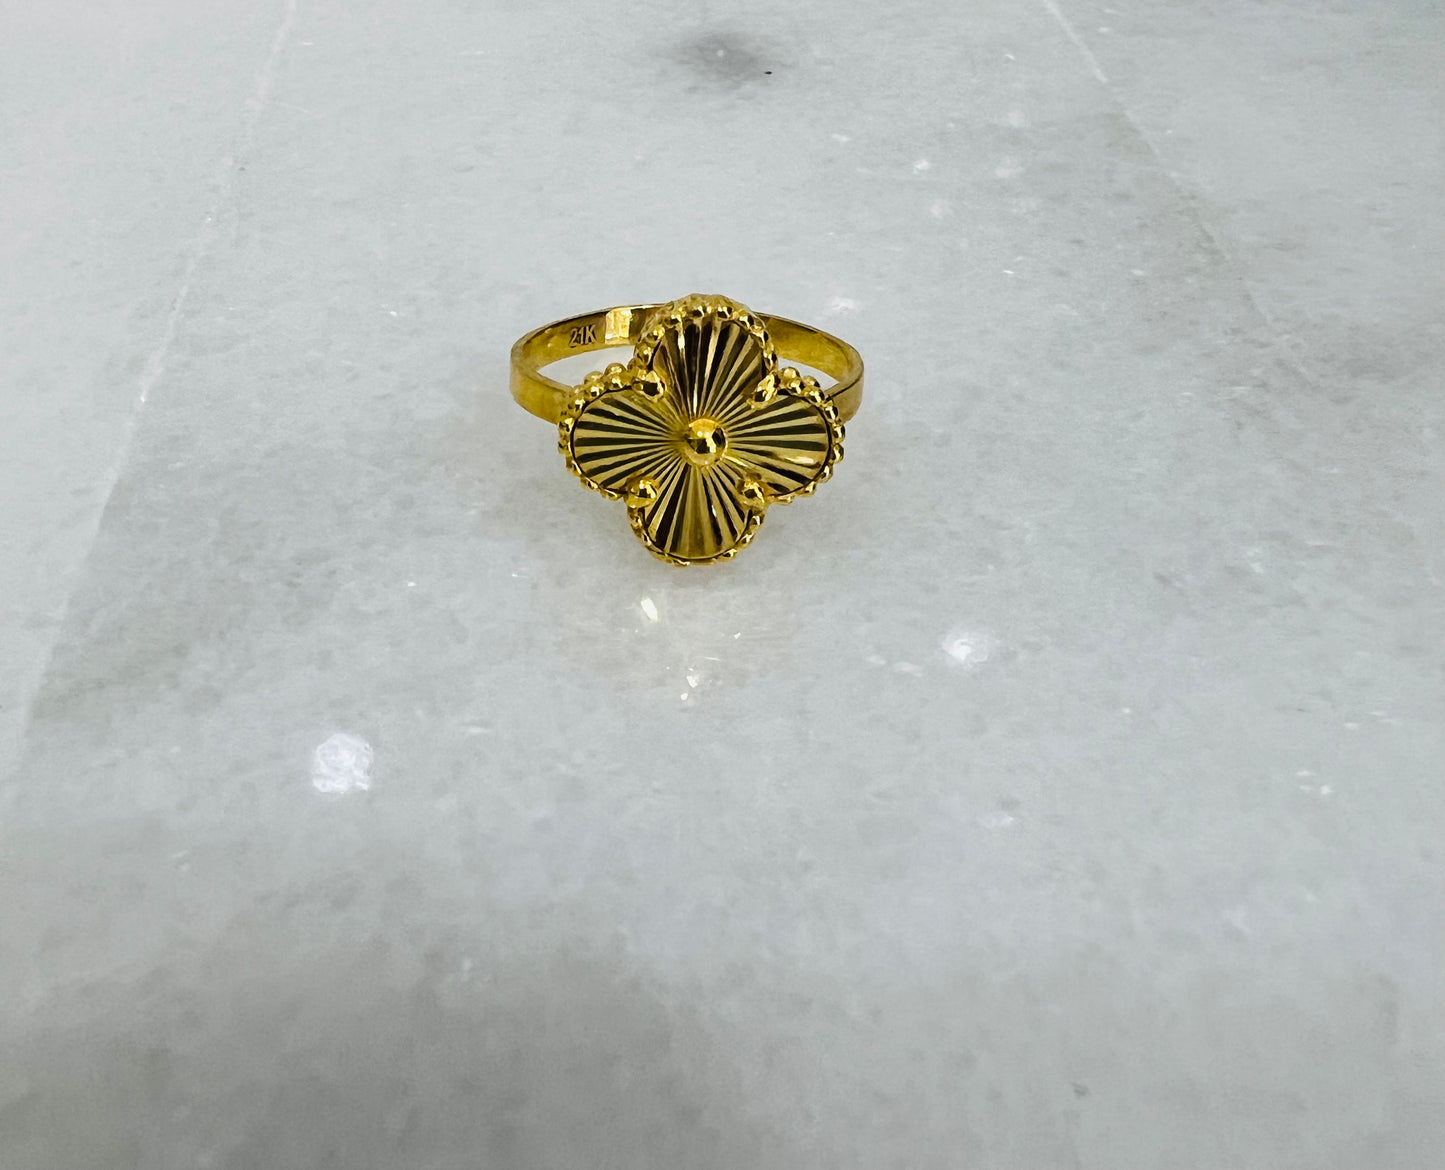 21k Gold 4 clover Ring